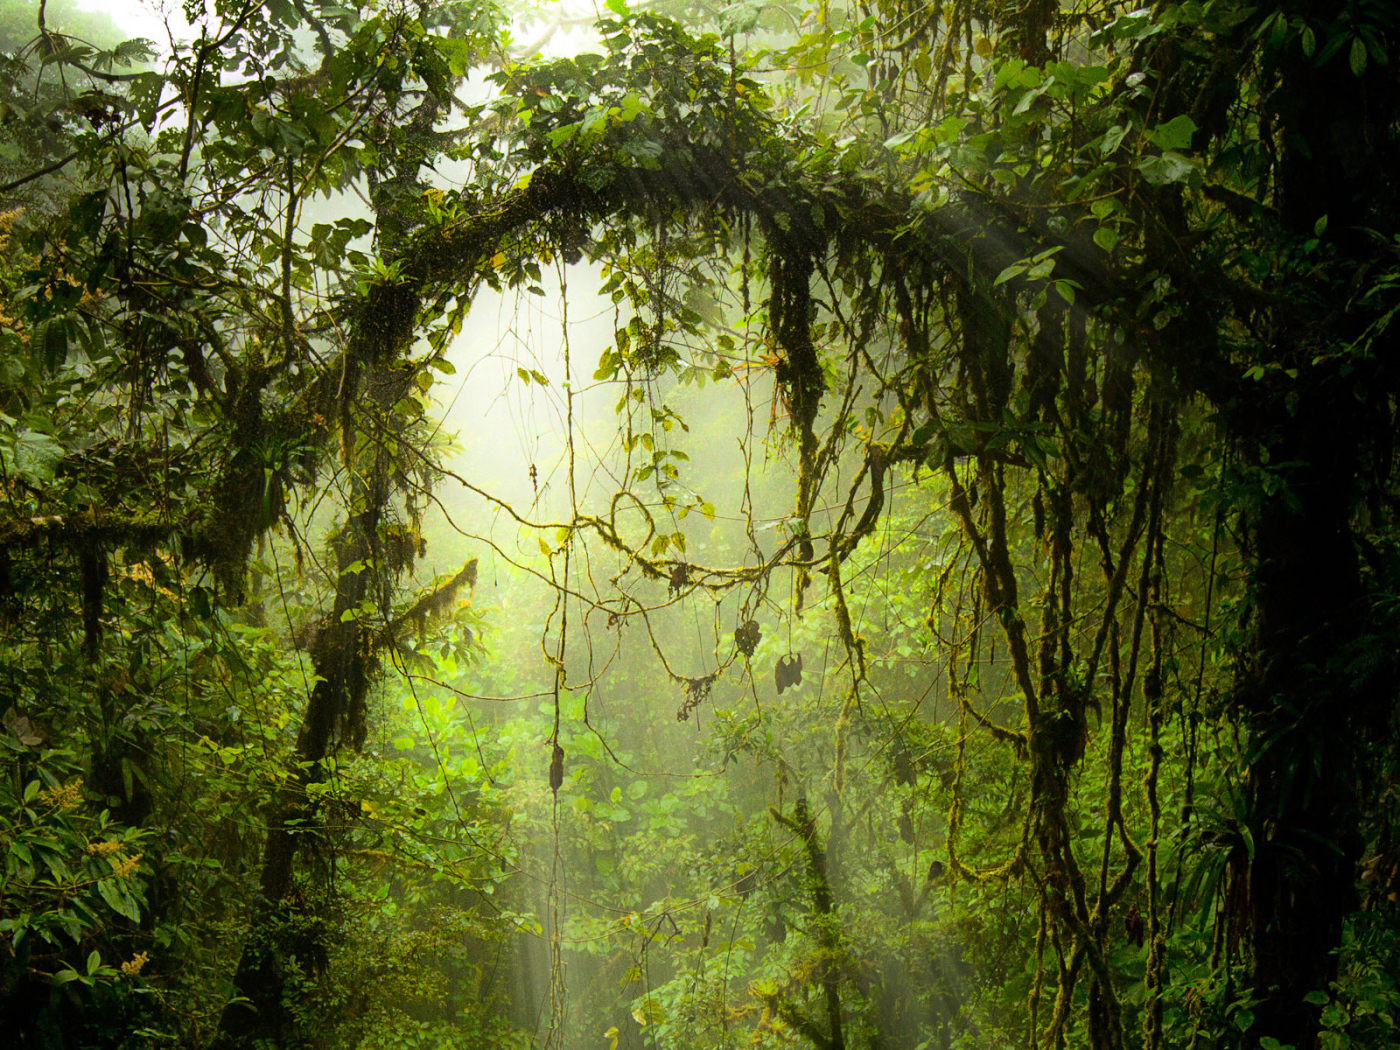 Опасные джунгли Коста-Рика